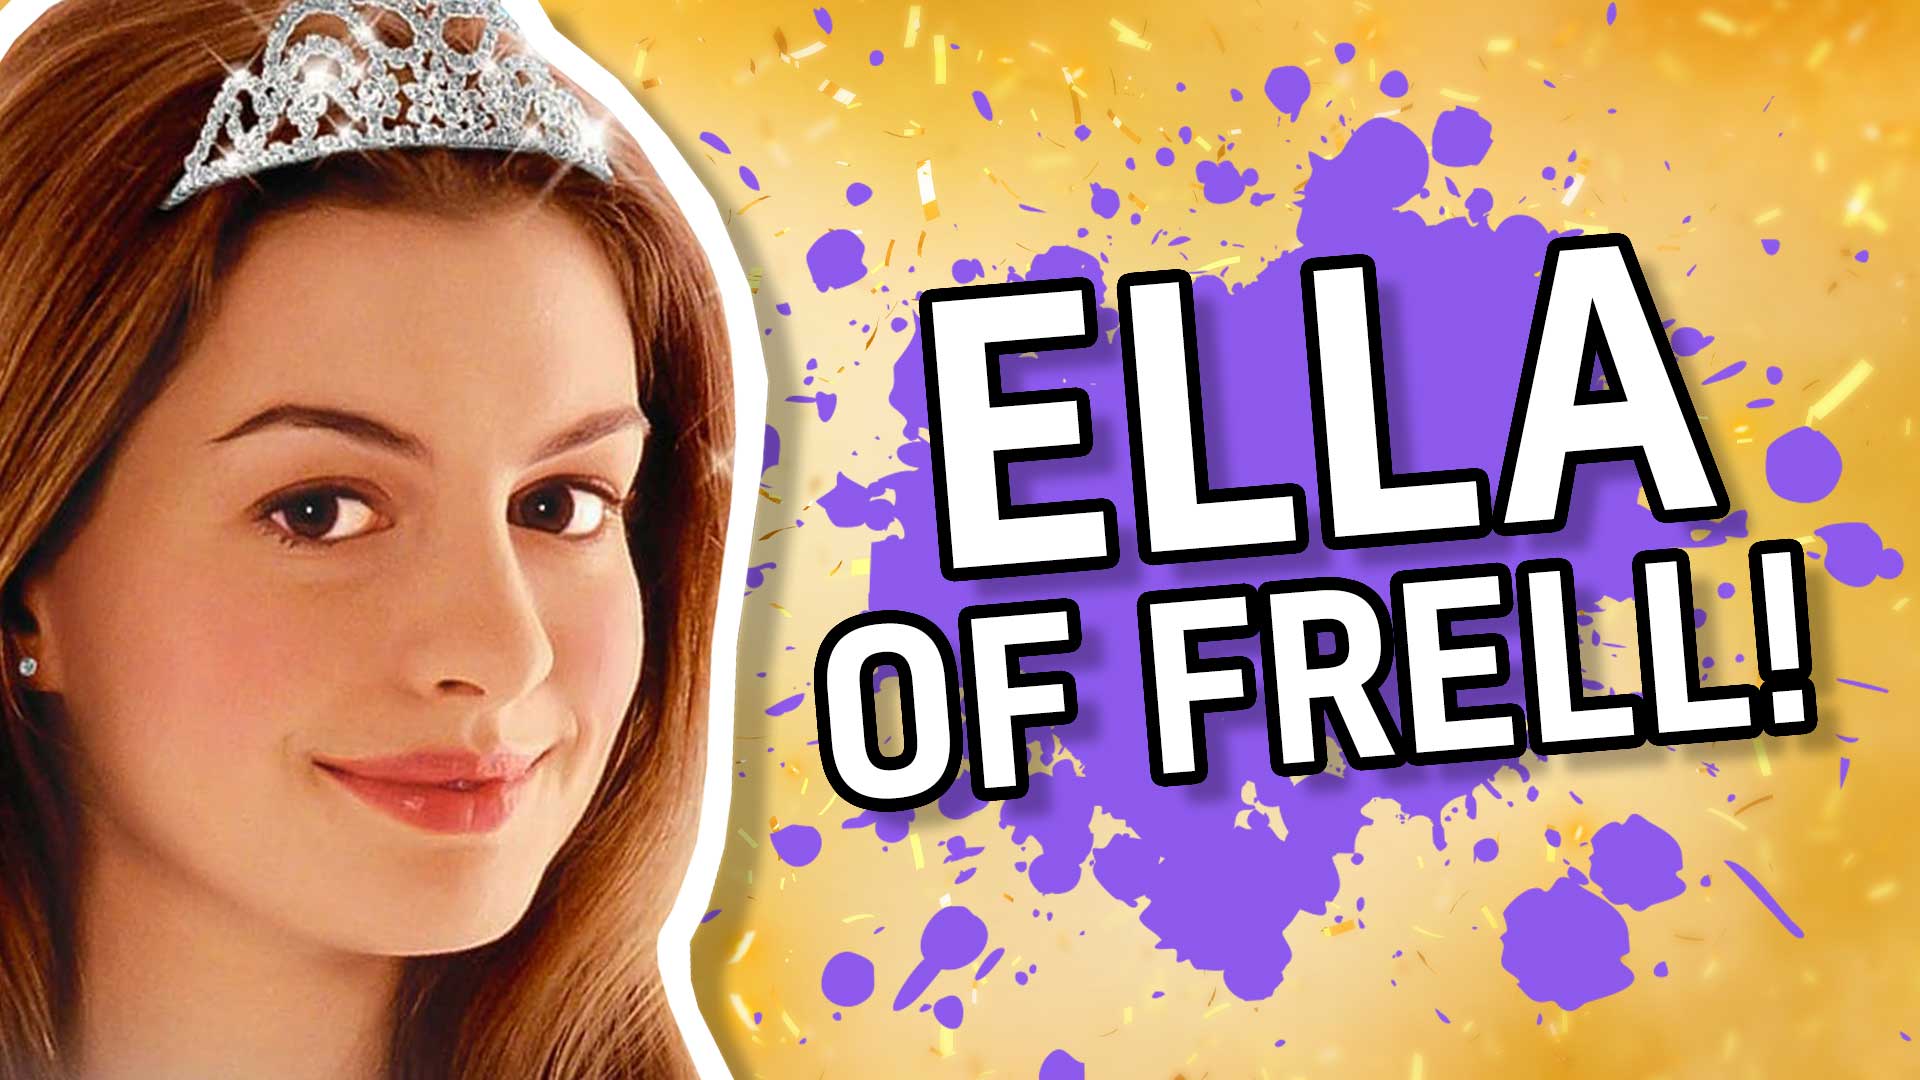 Result: Ella of Frell